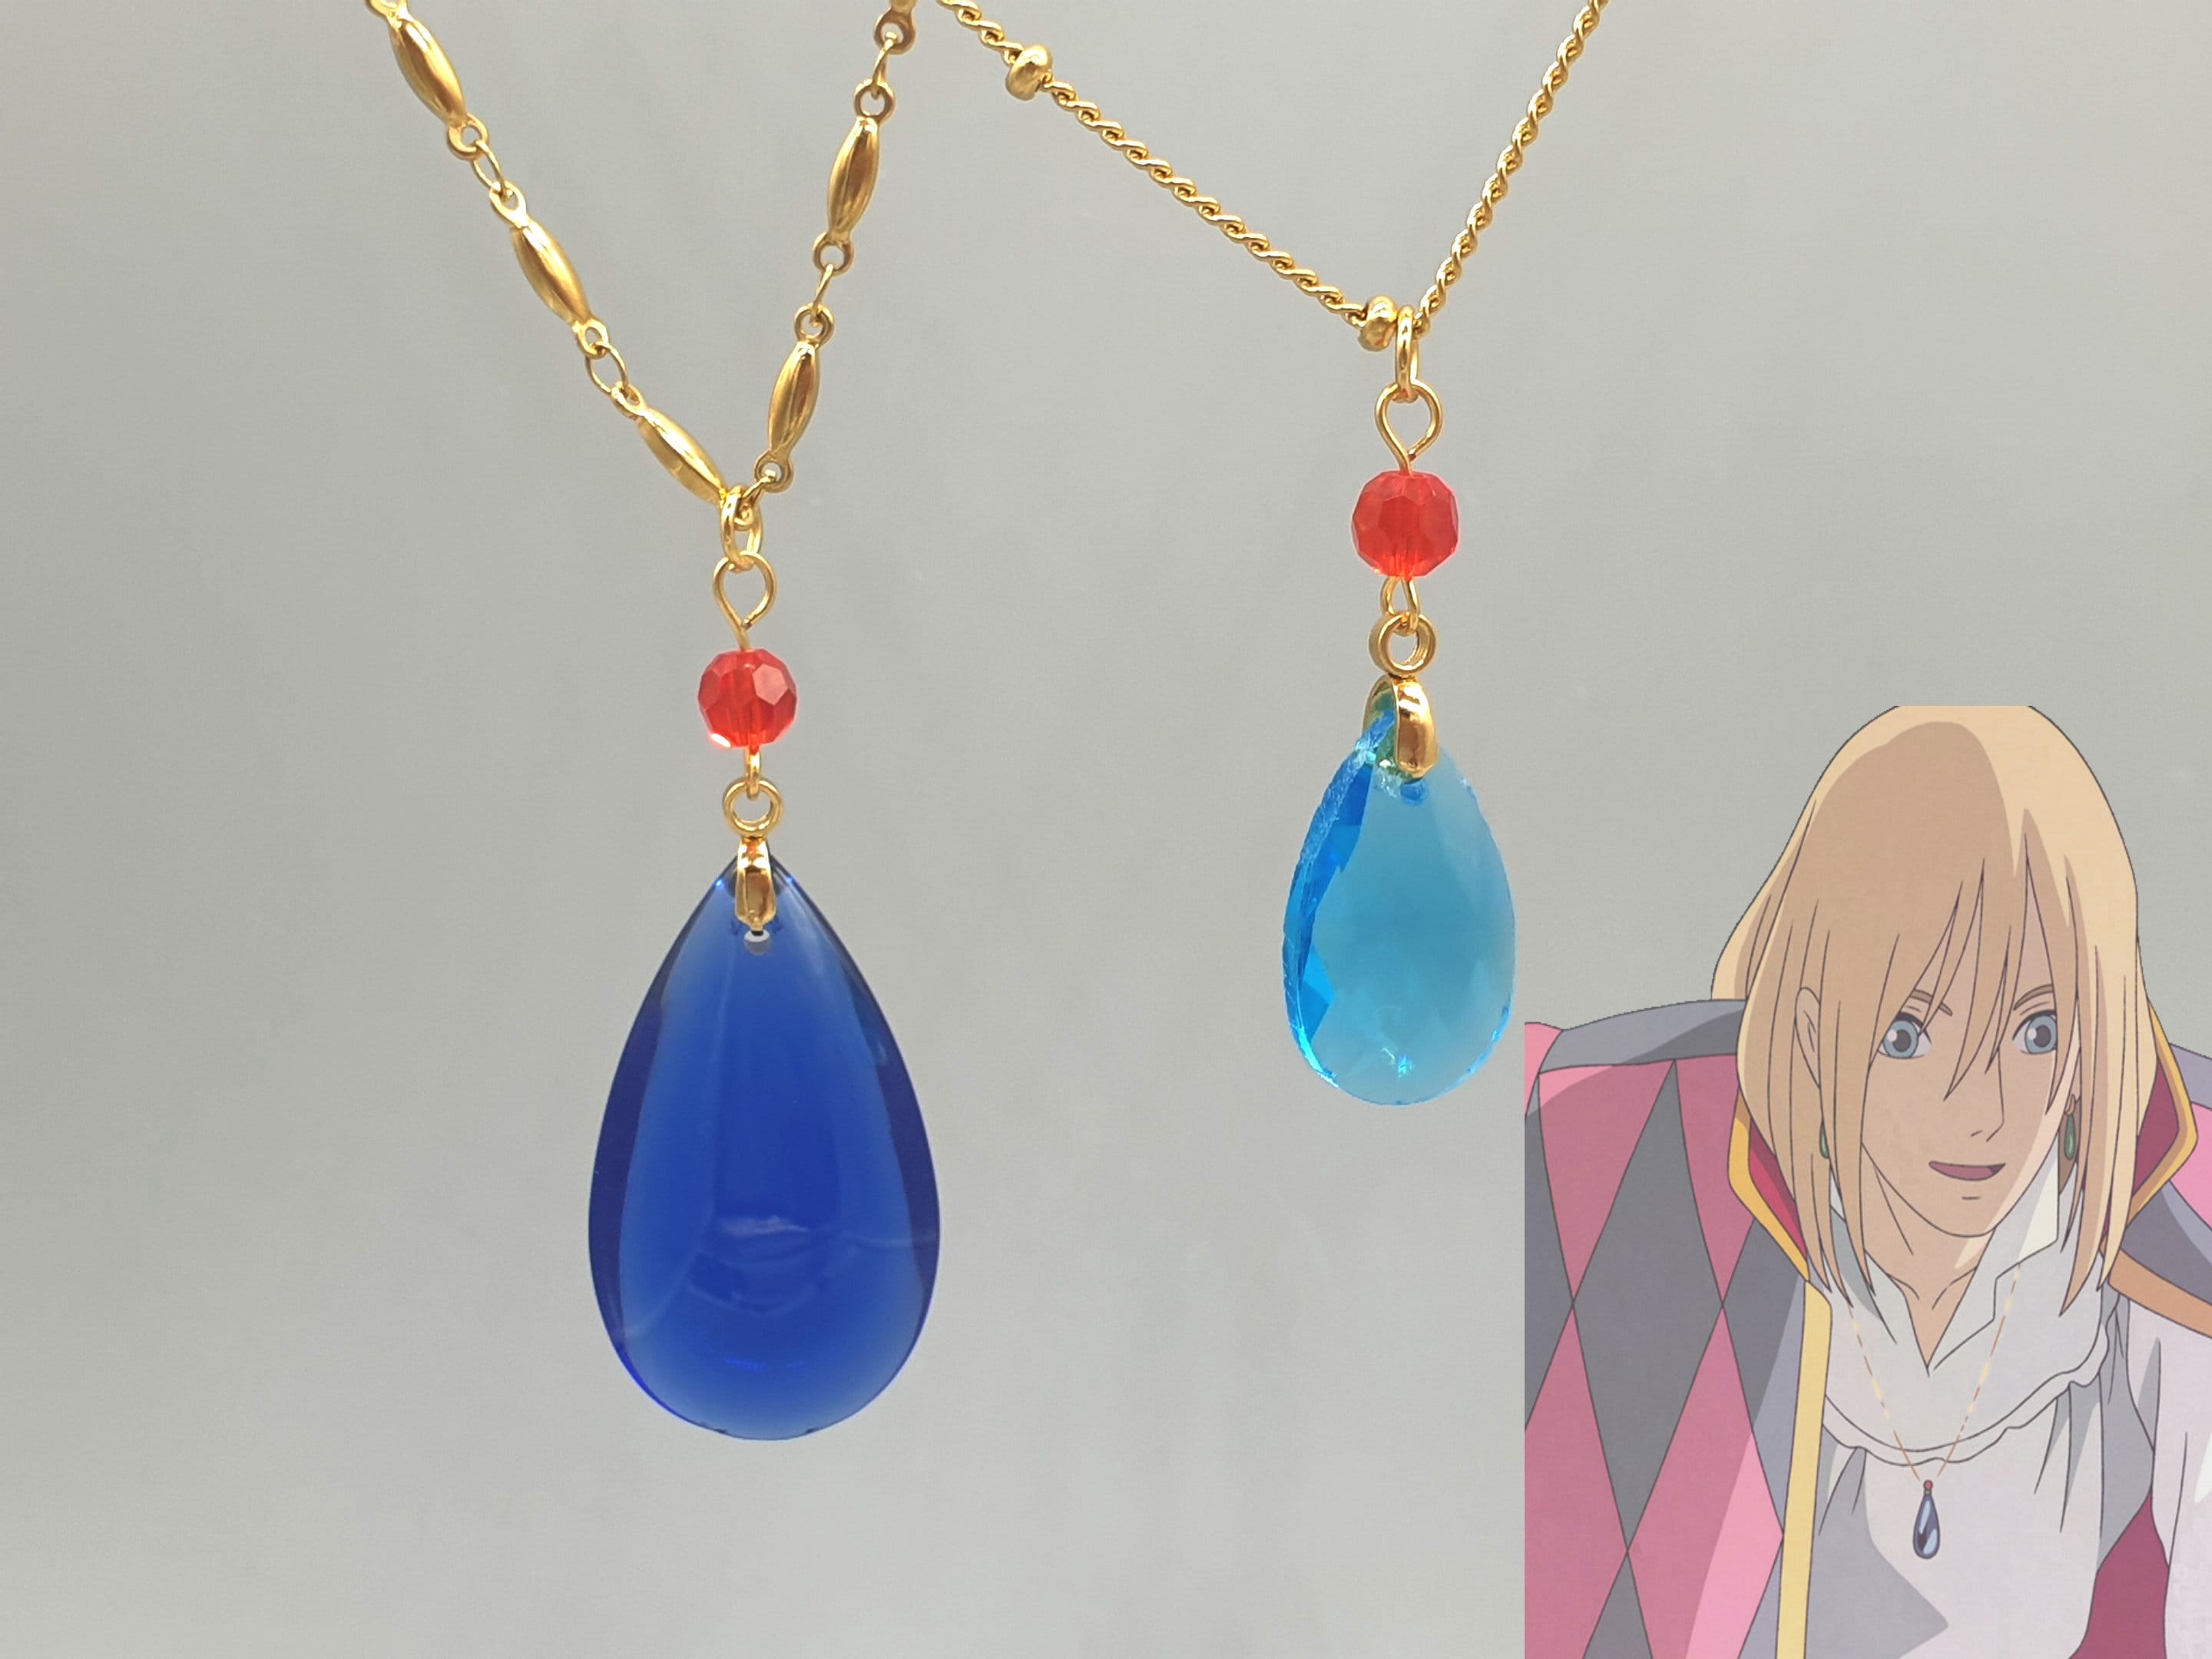 Dainty Anime Jewelry from Apollo Box  Anime jewelry Trendy jewelry  bracelets Star necklace silver